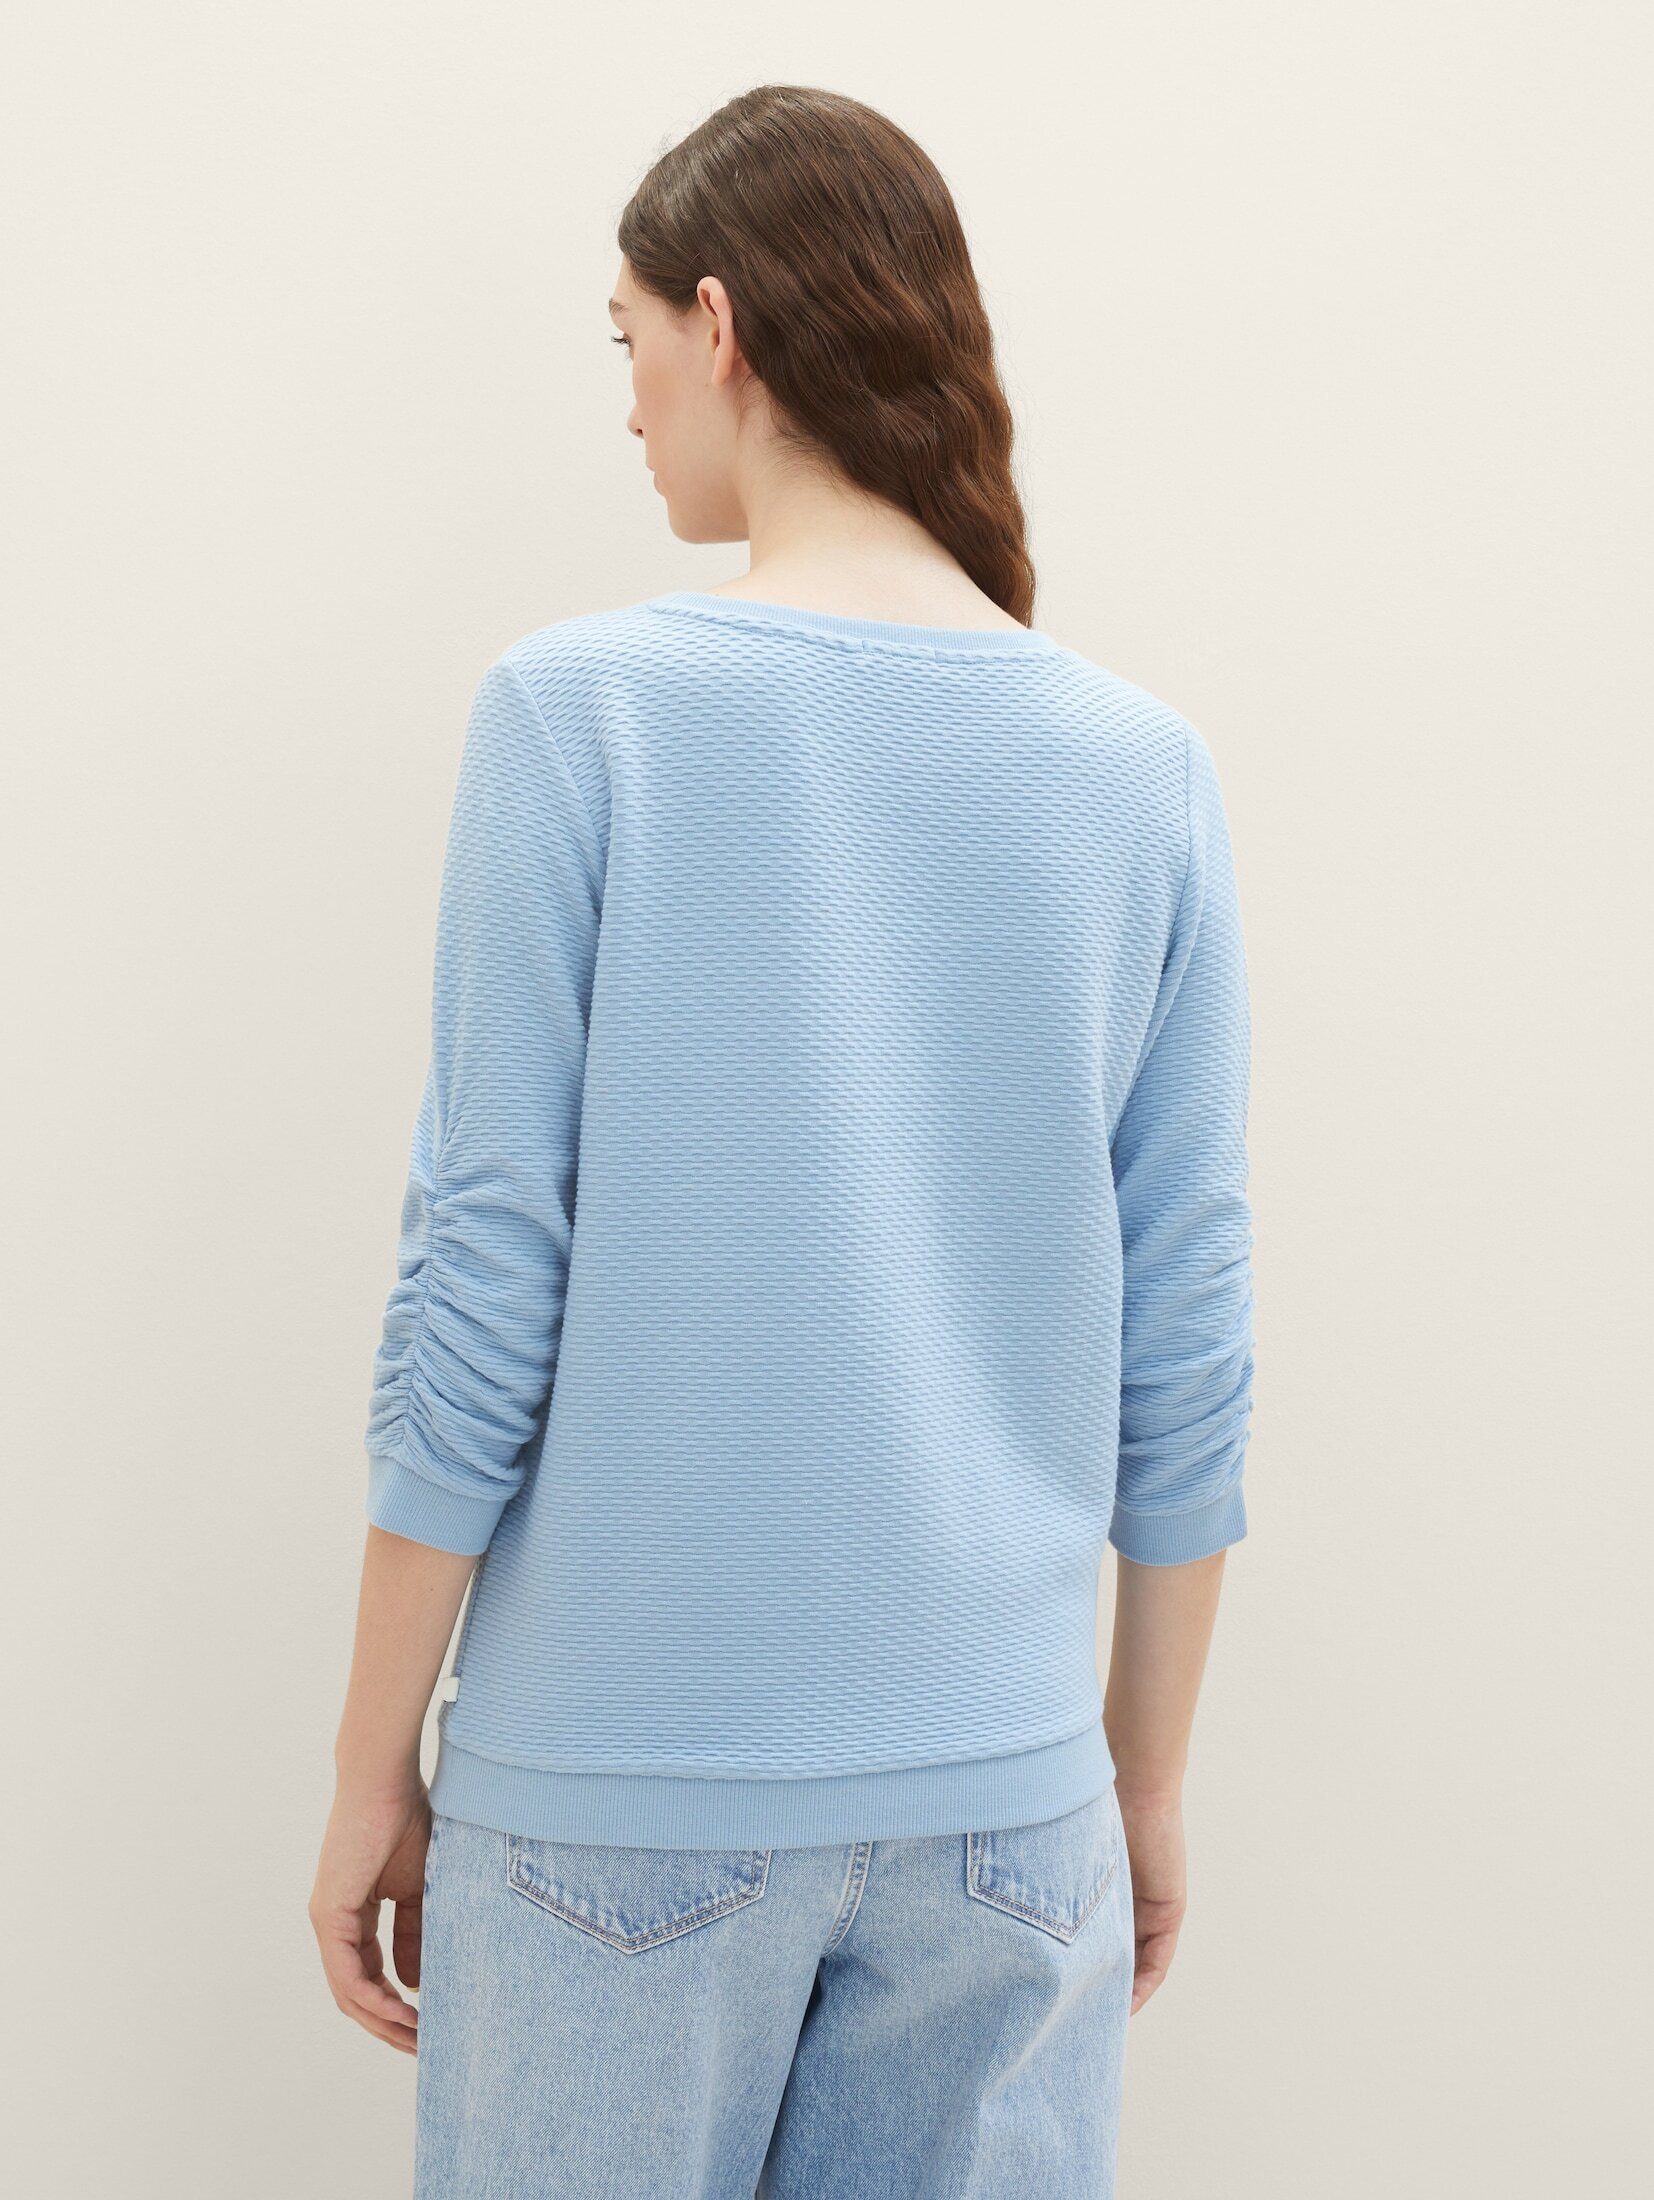 TOM TAILOR Denim Sweatshirt Sweatshirt Strukturiertes Charming Blue Soft